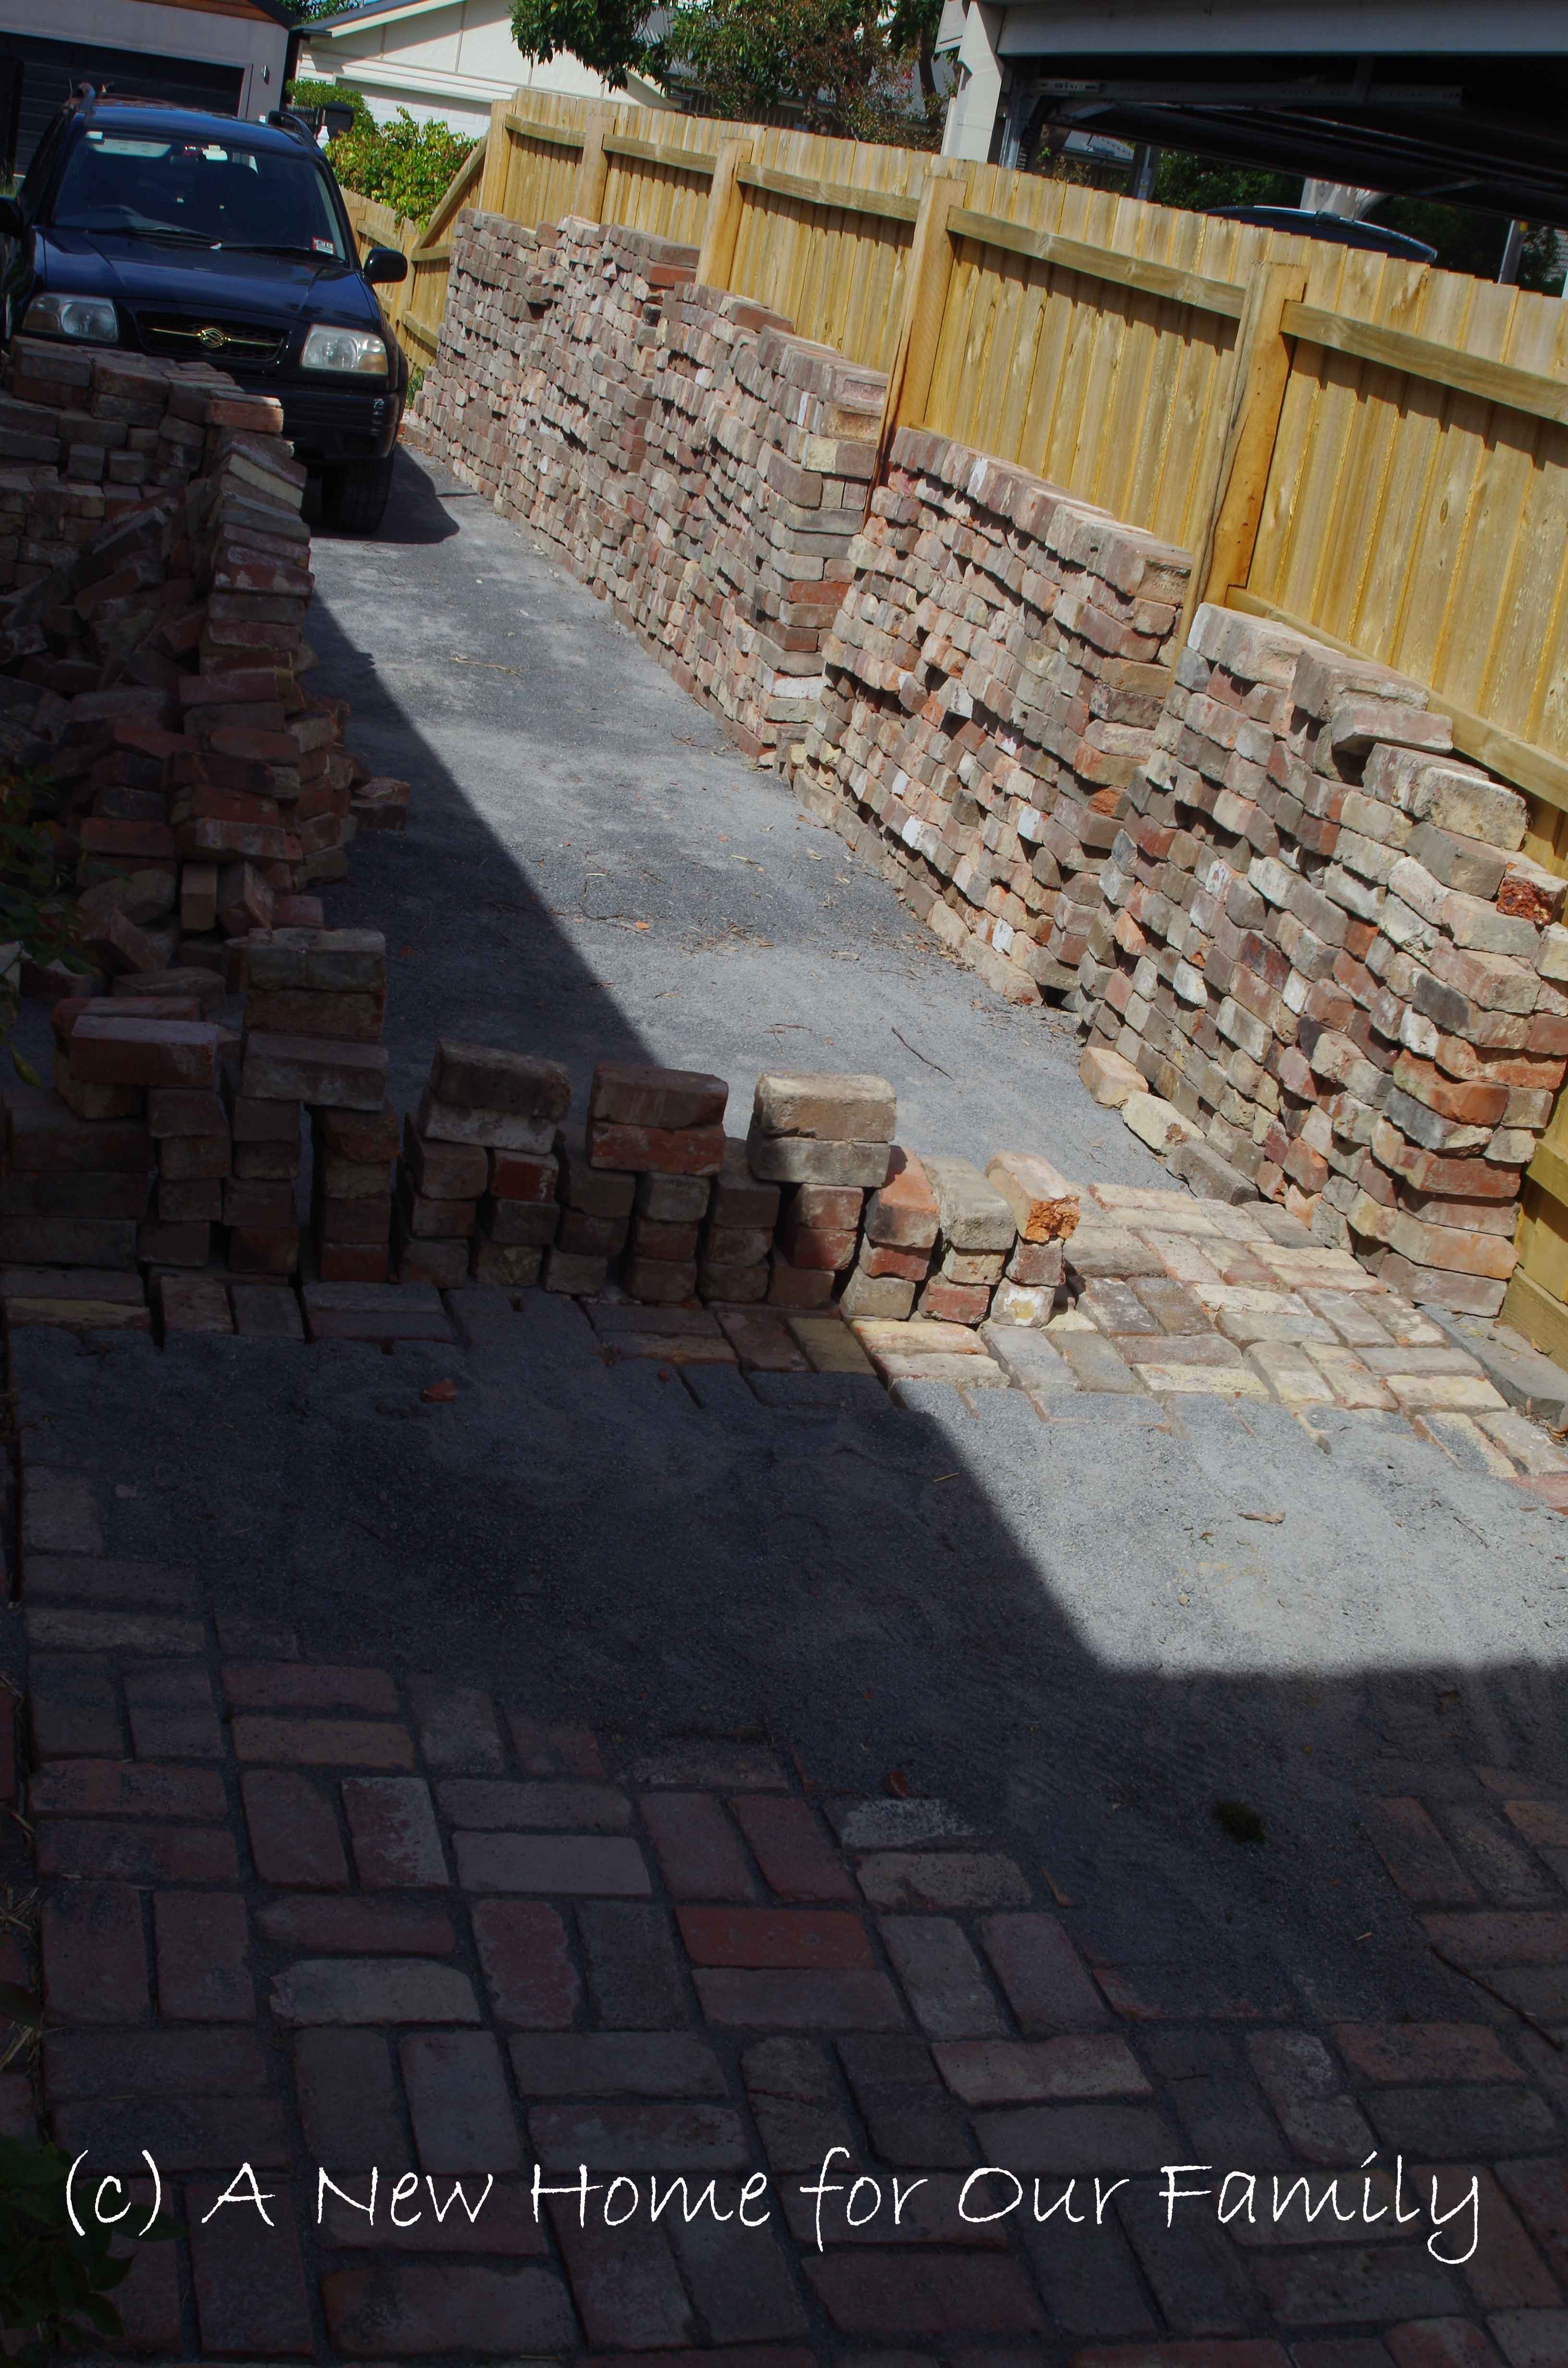 Starting the driveway - 3,000 bricks